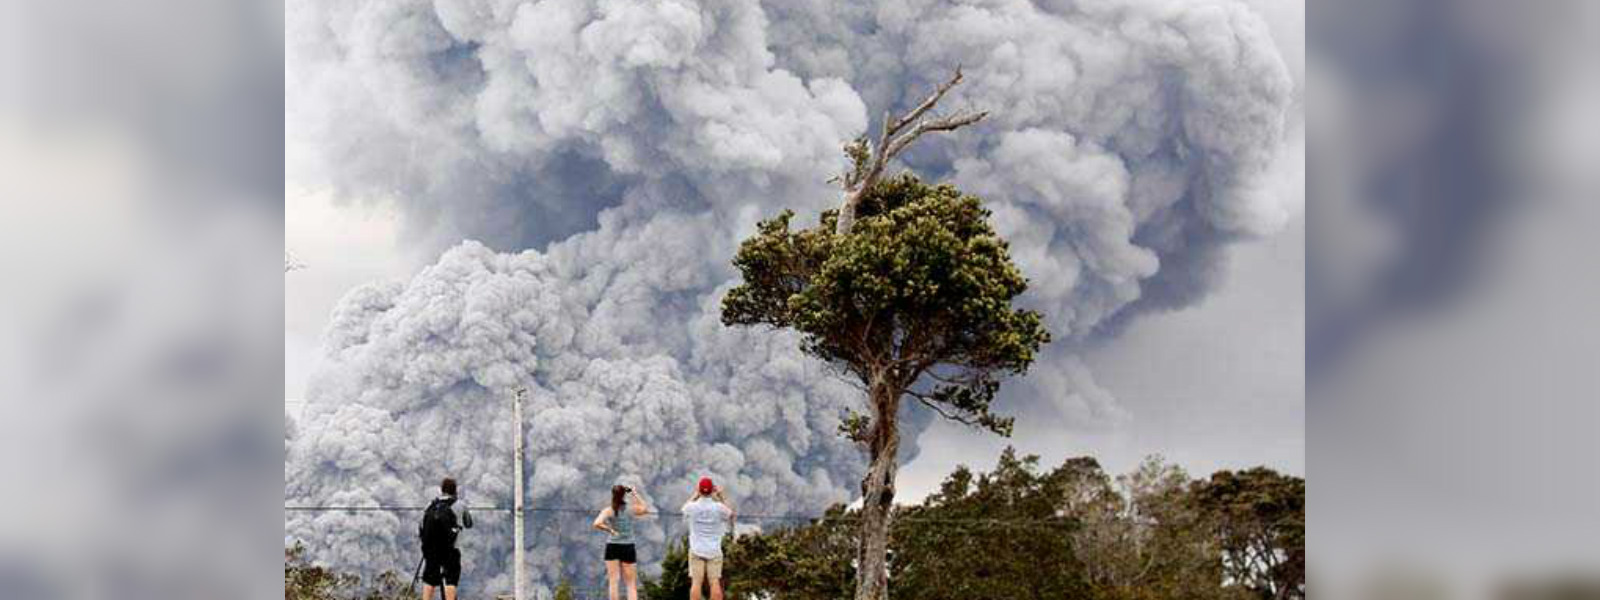 "Ballistic blocks" shoot from Hawaii volcano